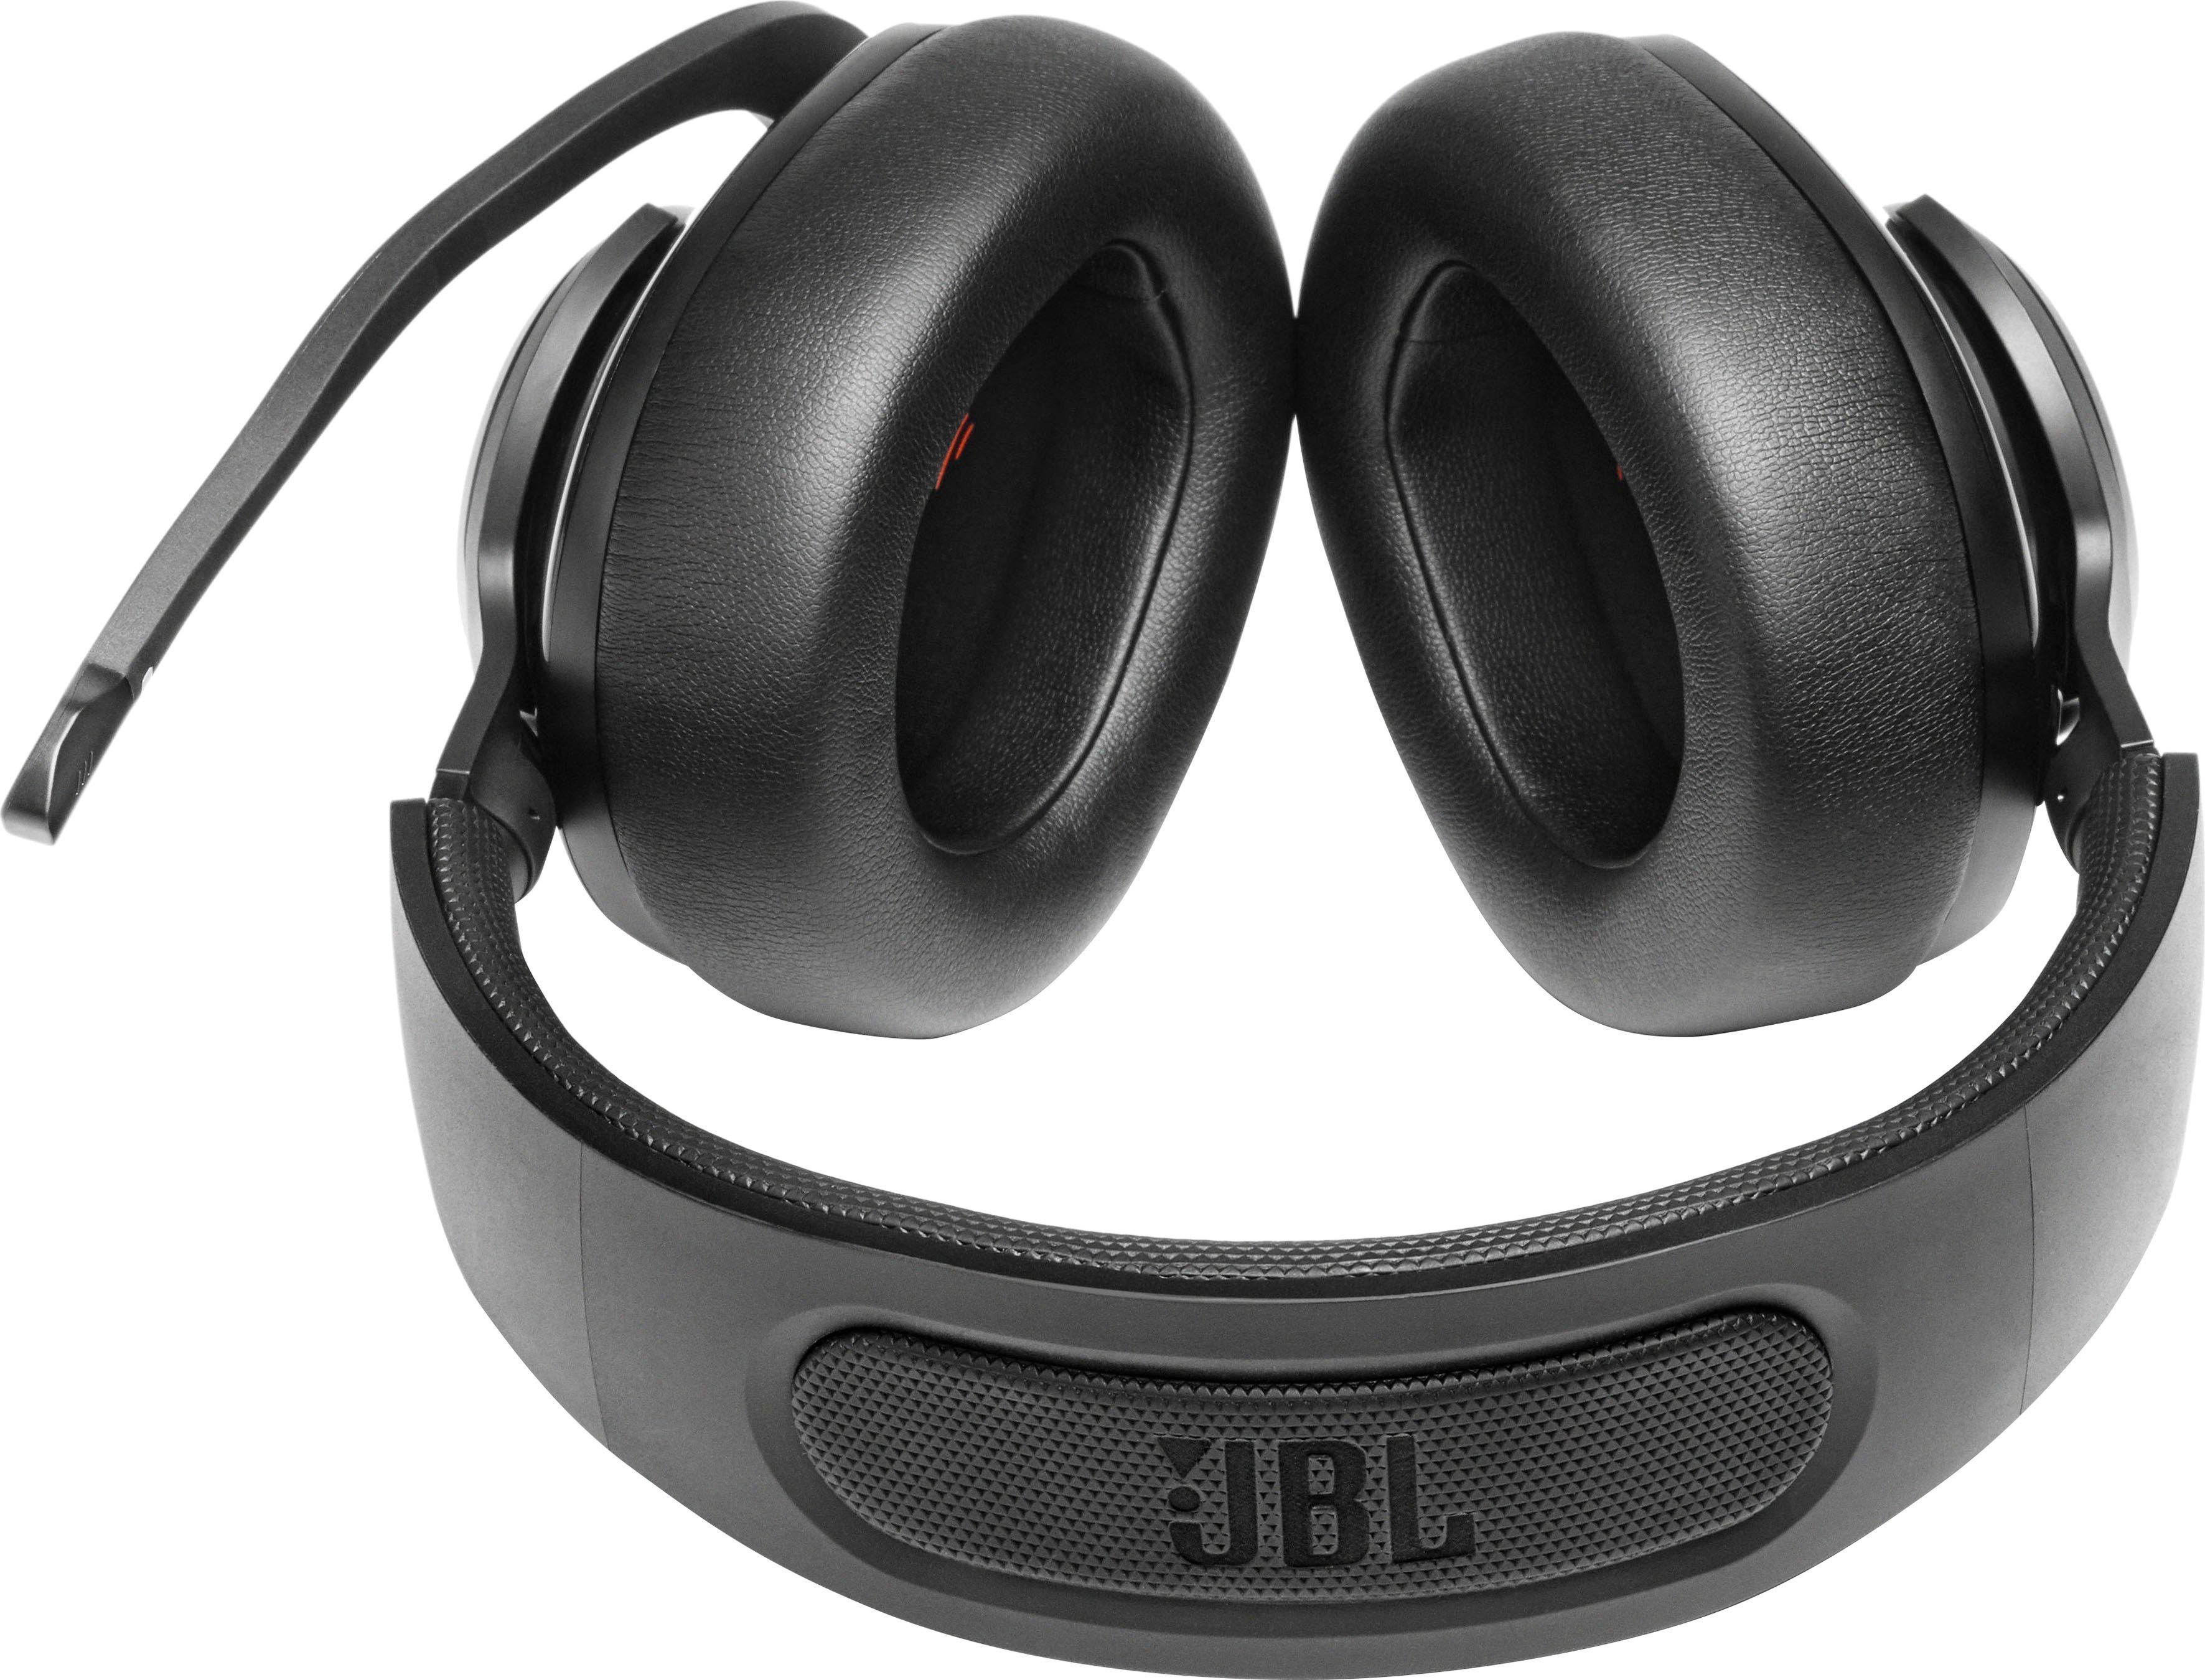 JBL QUANTUM 400 Gaming-Headset